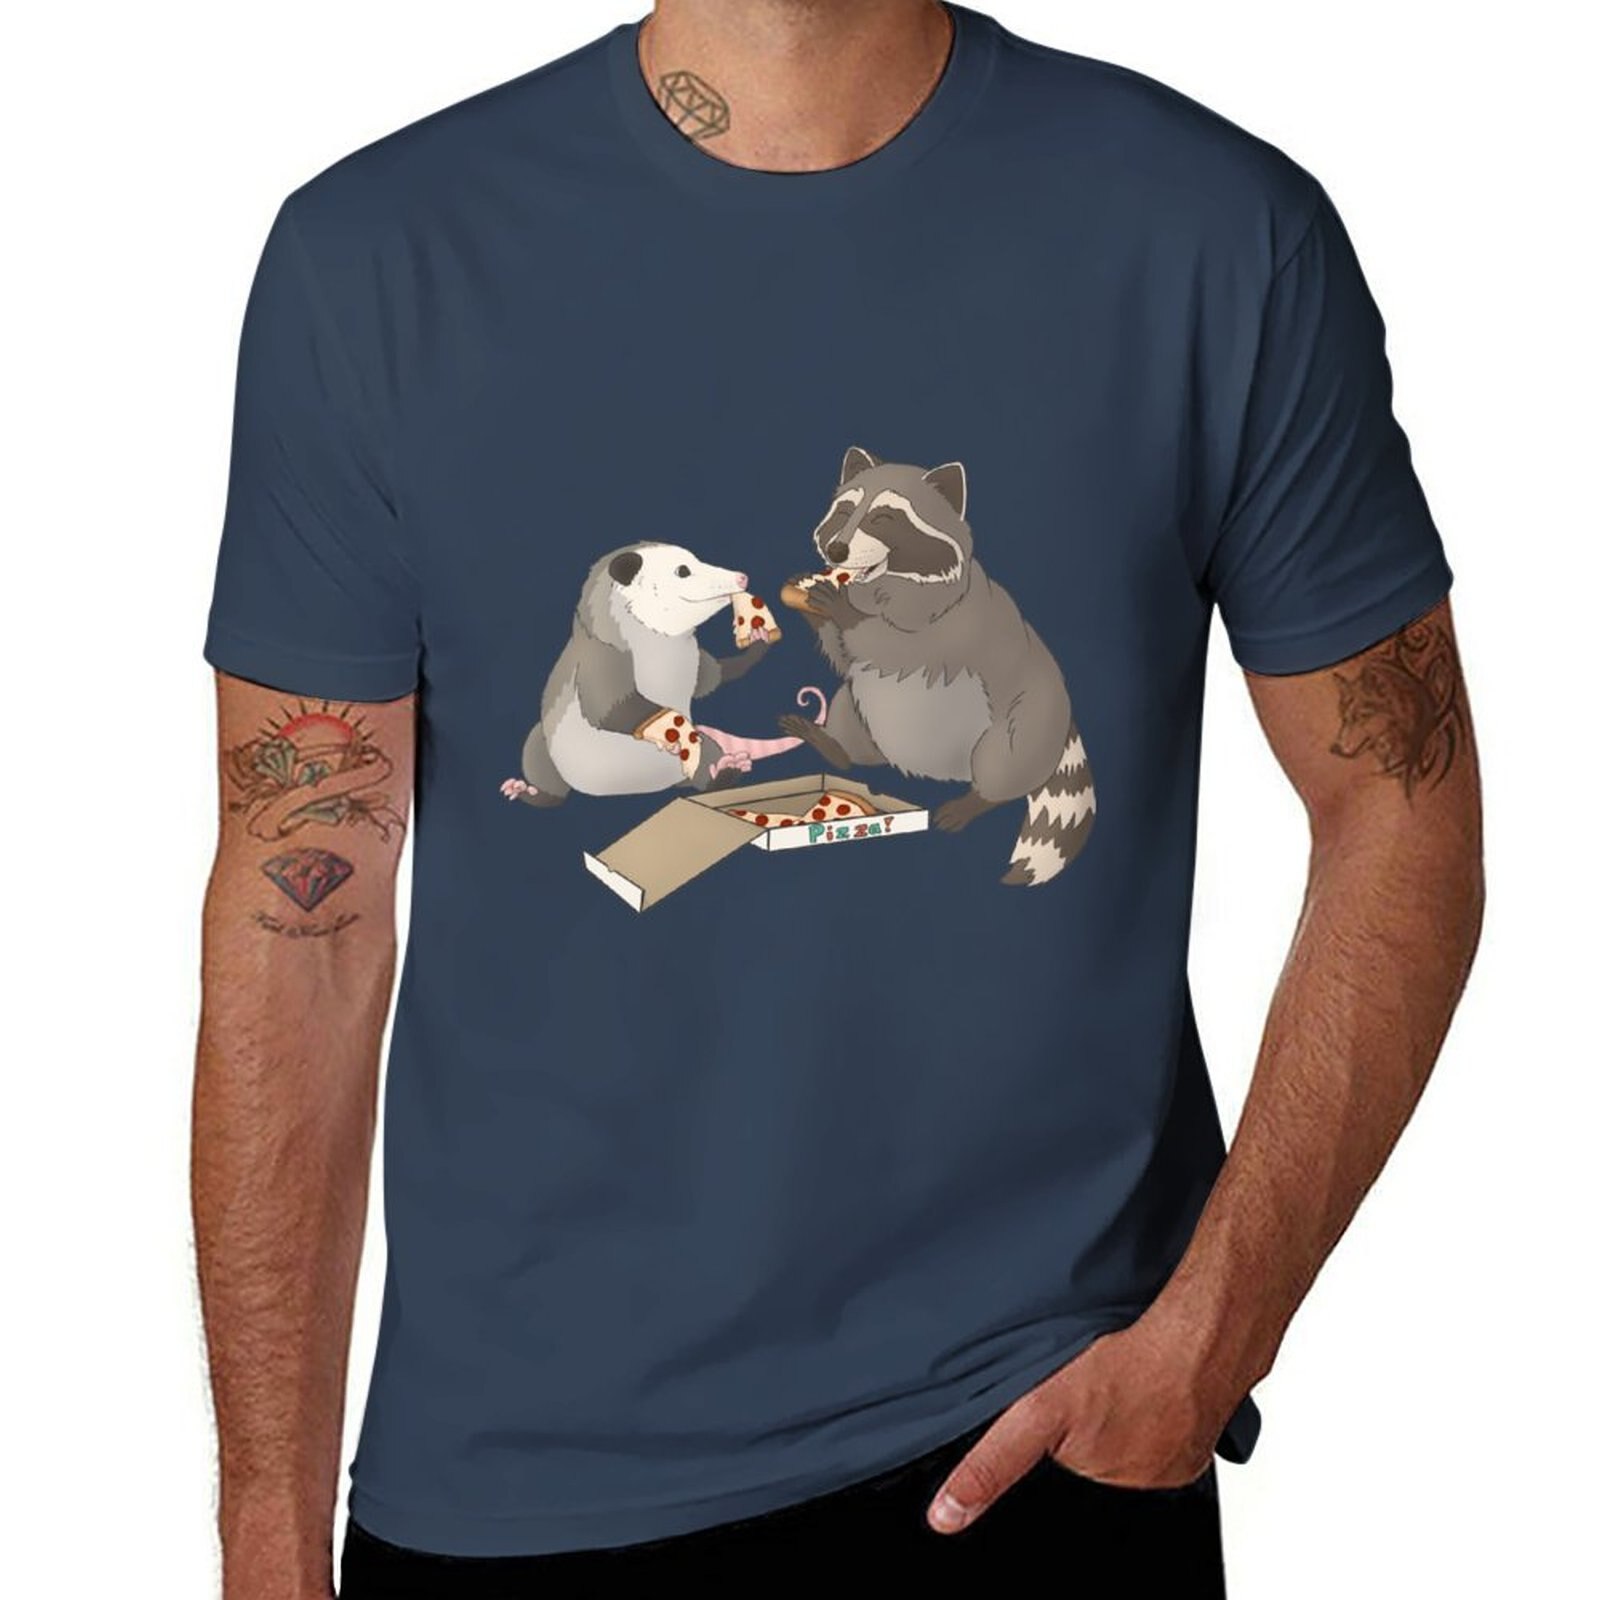 포섬 너구리 먹는 피자 티셔츠, 소년용 커스텀 티셔츠, 나만의 플레인 블랙 티셔츠 디자인, 신제품